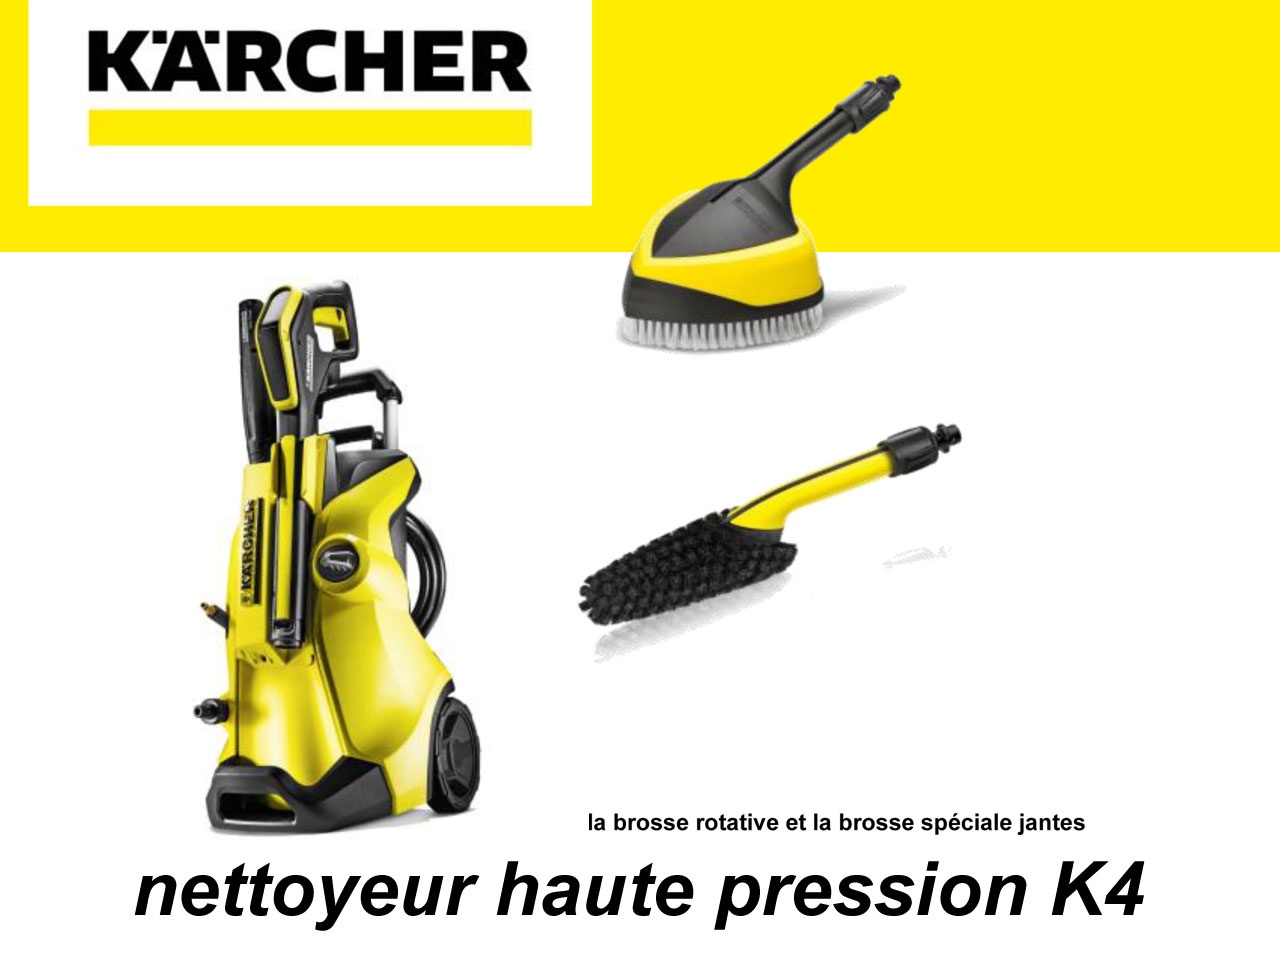 Kärcher lance une offre spéciale sur tous les modèles de son nettoyeur haute pression K4